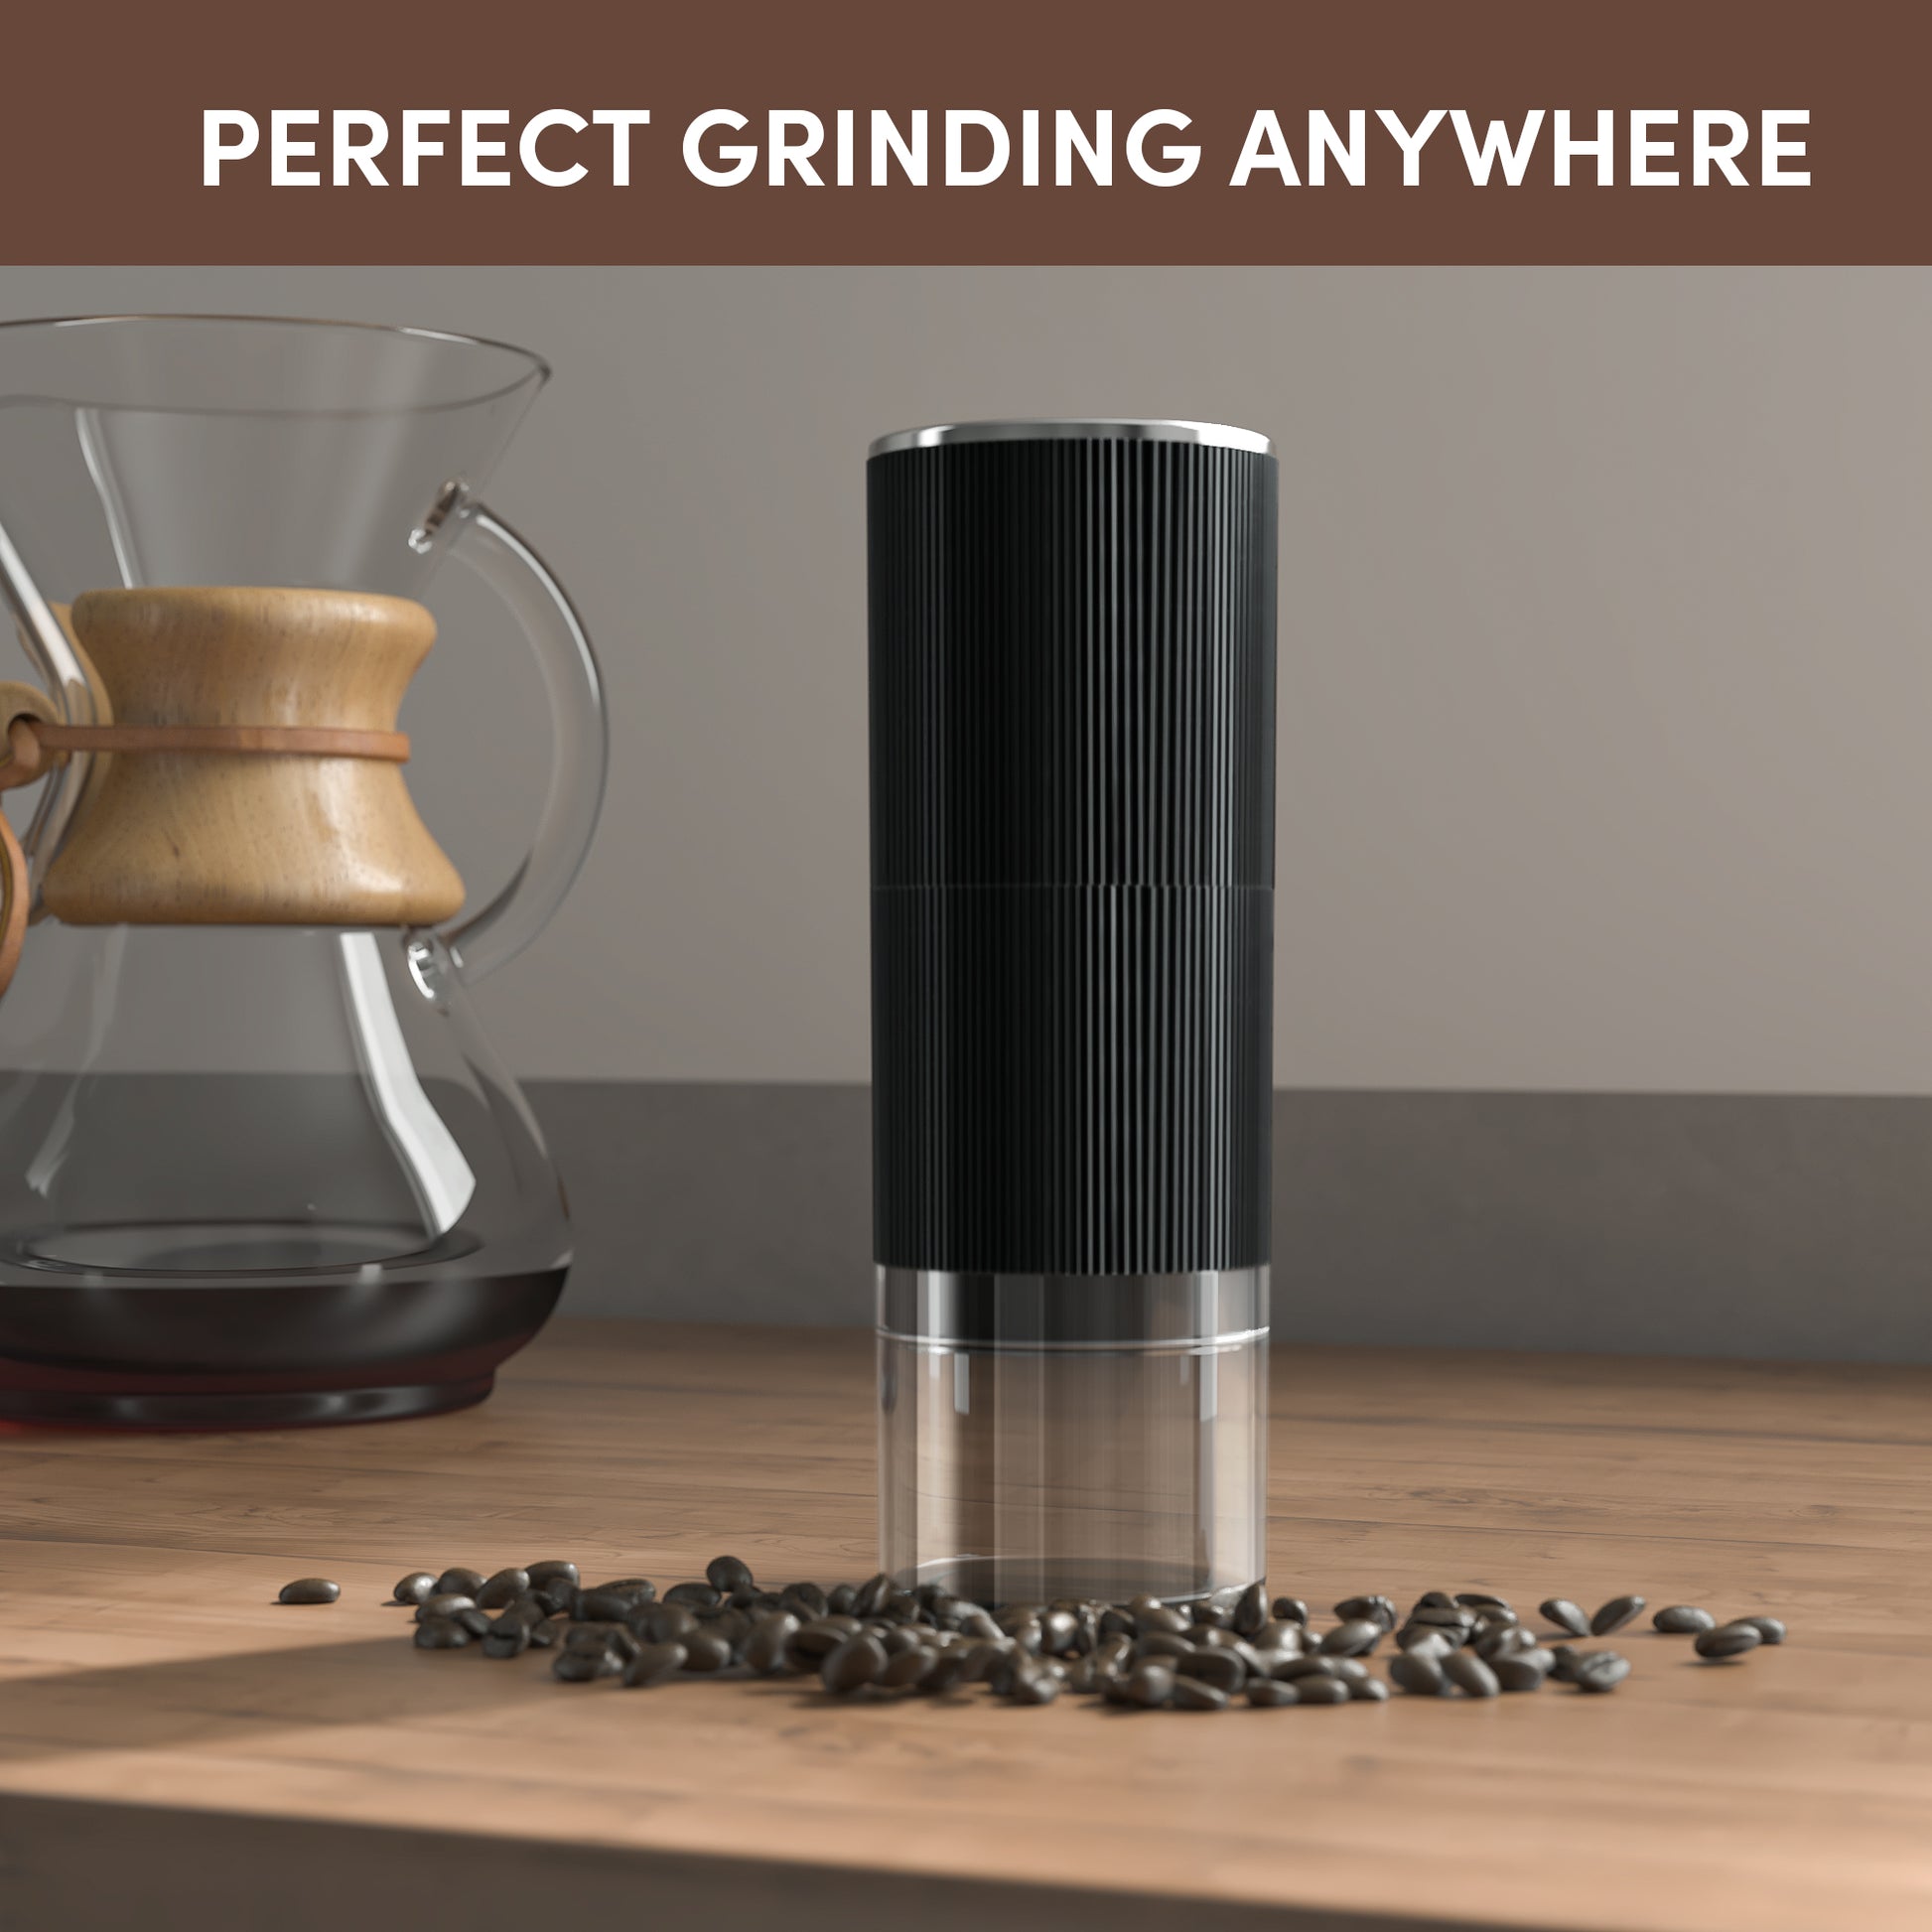 <img src="coffee grinder.jpg" alt="wirsh poratable coffee grinder in table"/>